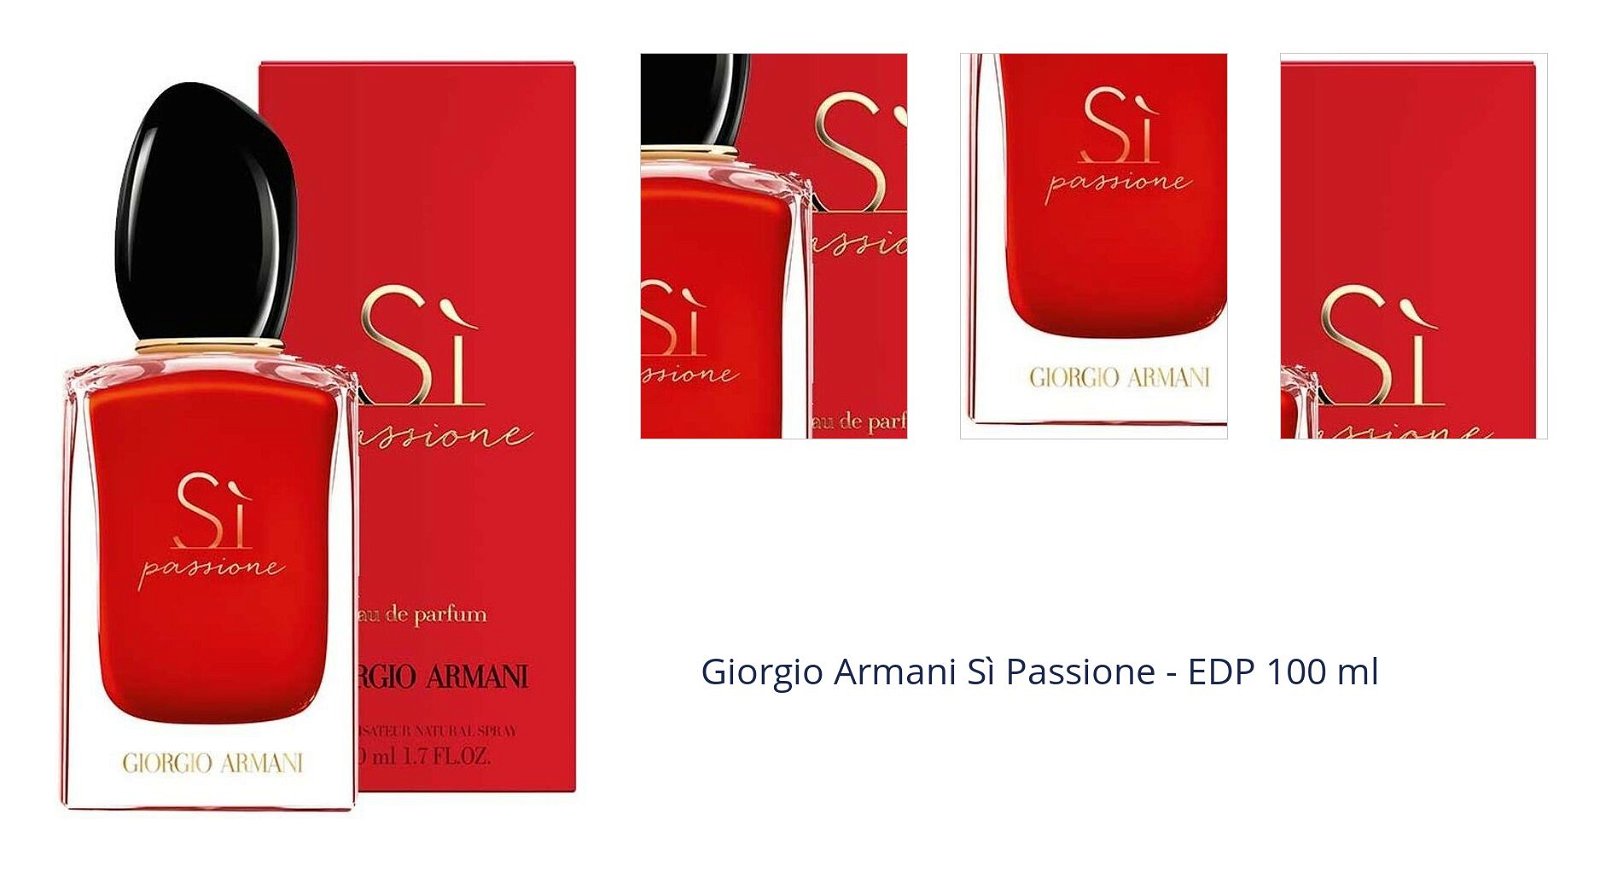 Giorgio Armani Sì Passione - EDP 100 ml 1